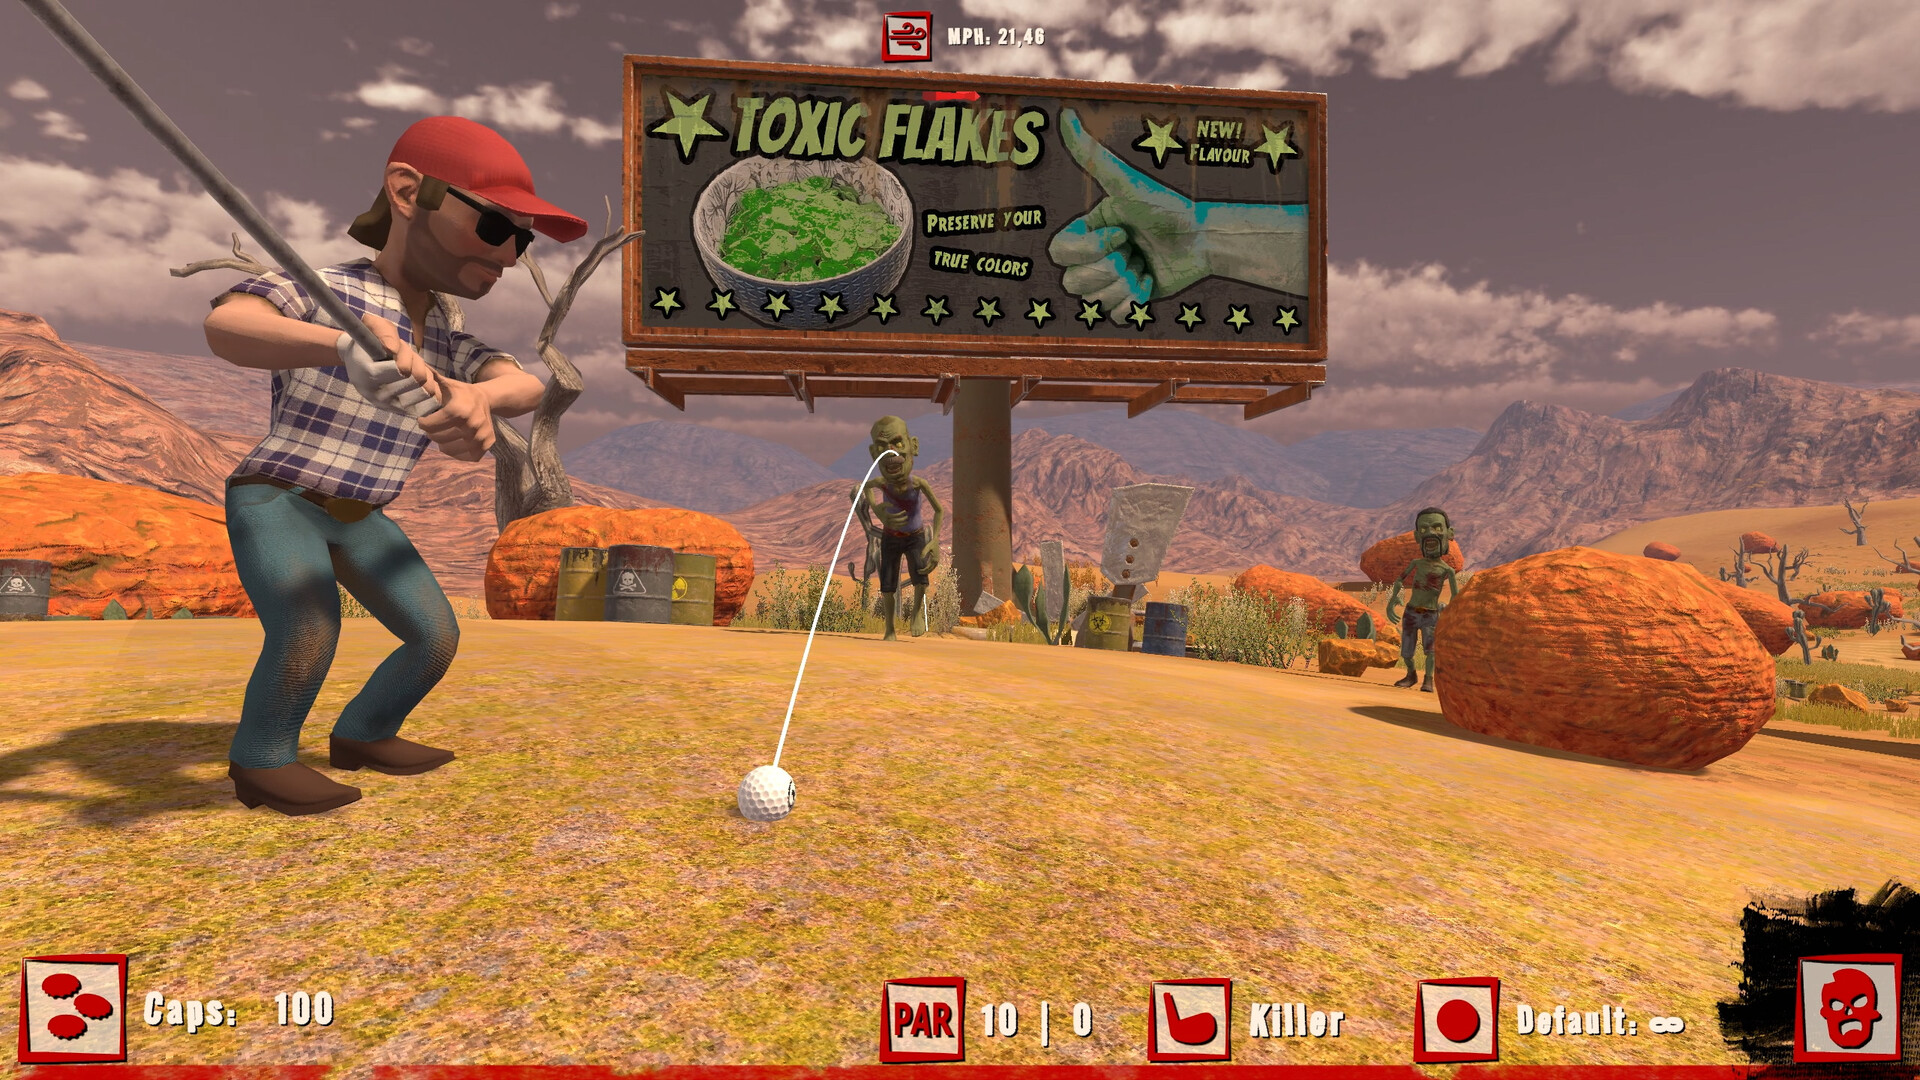 Golf VS Zombies Steam CD Key